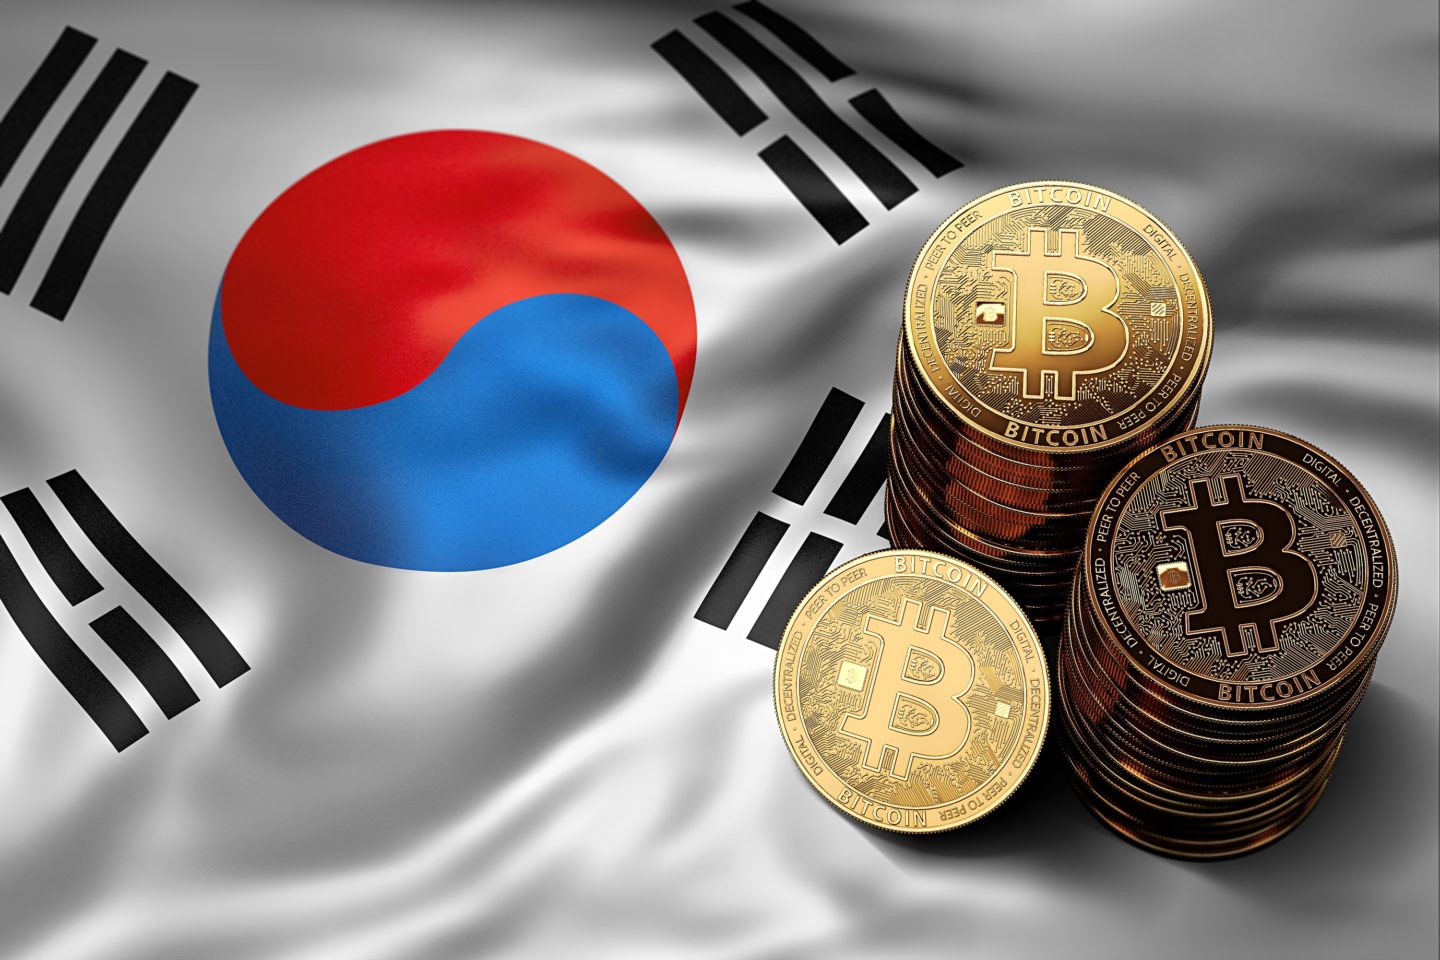 اختلاف نظر وزرای کره جنوبی بر سر ممنوعیت ارزهای دیجیتال